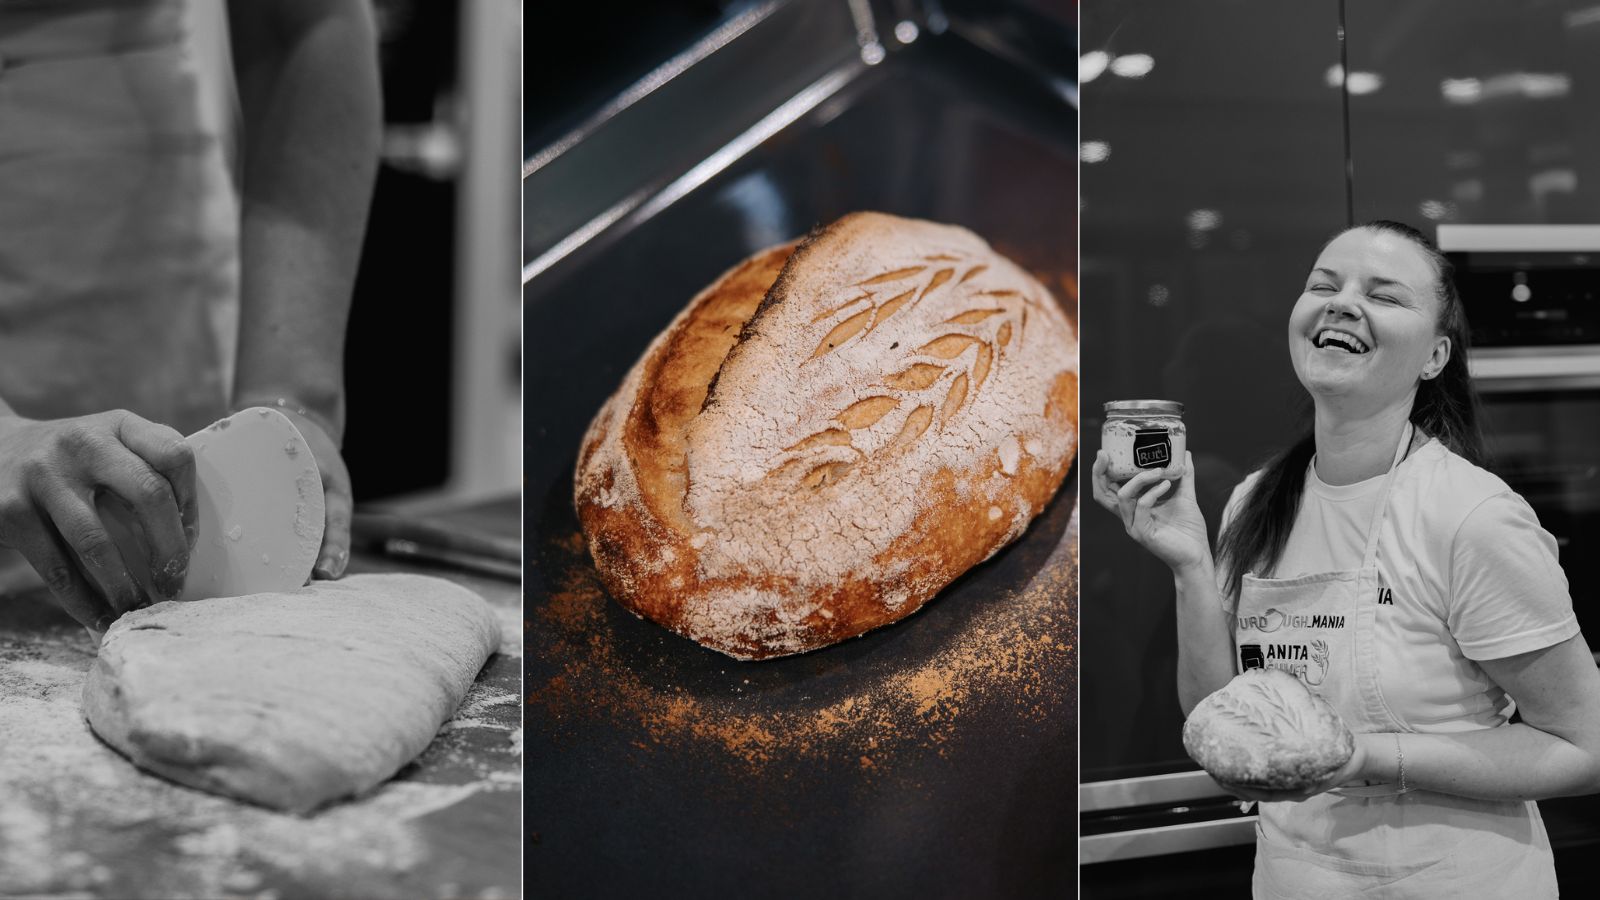 Udeležili smo se delavnice slovenske mojstrice kruha z drožmi ‒ tukaj so skrivnosti, ki nam jih je razkrila